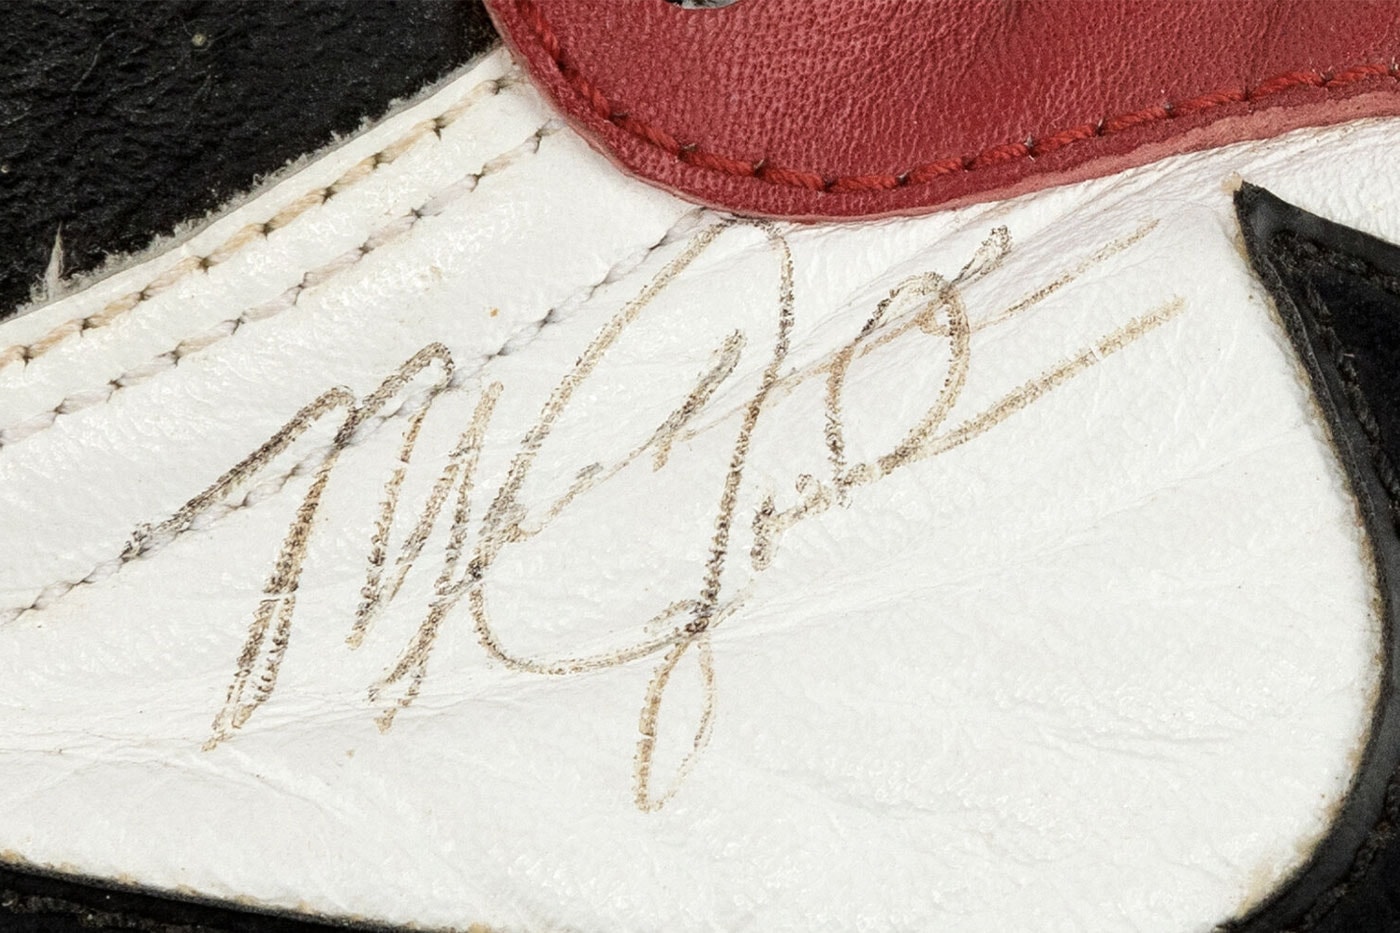 Signed Pair Michael Jordan's 1986 Game Worn Nike Air Jordan 1